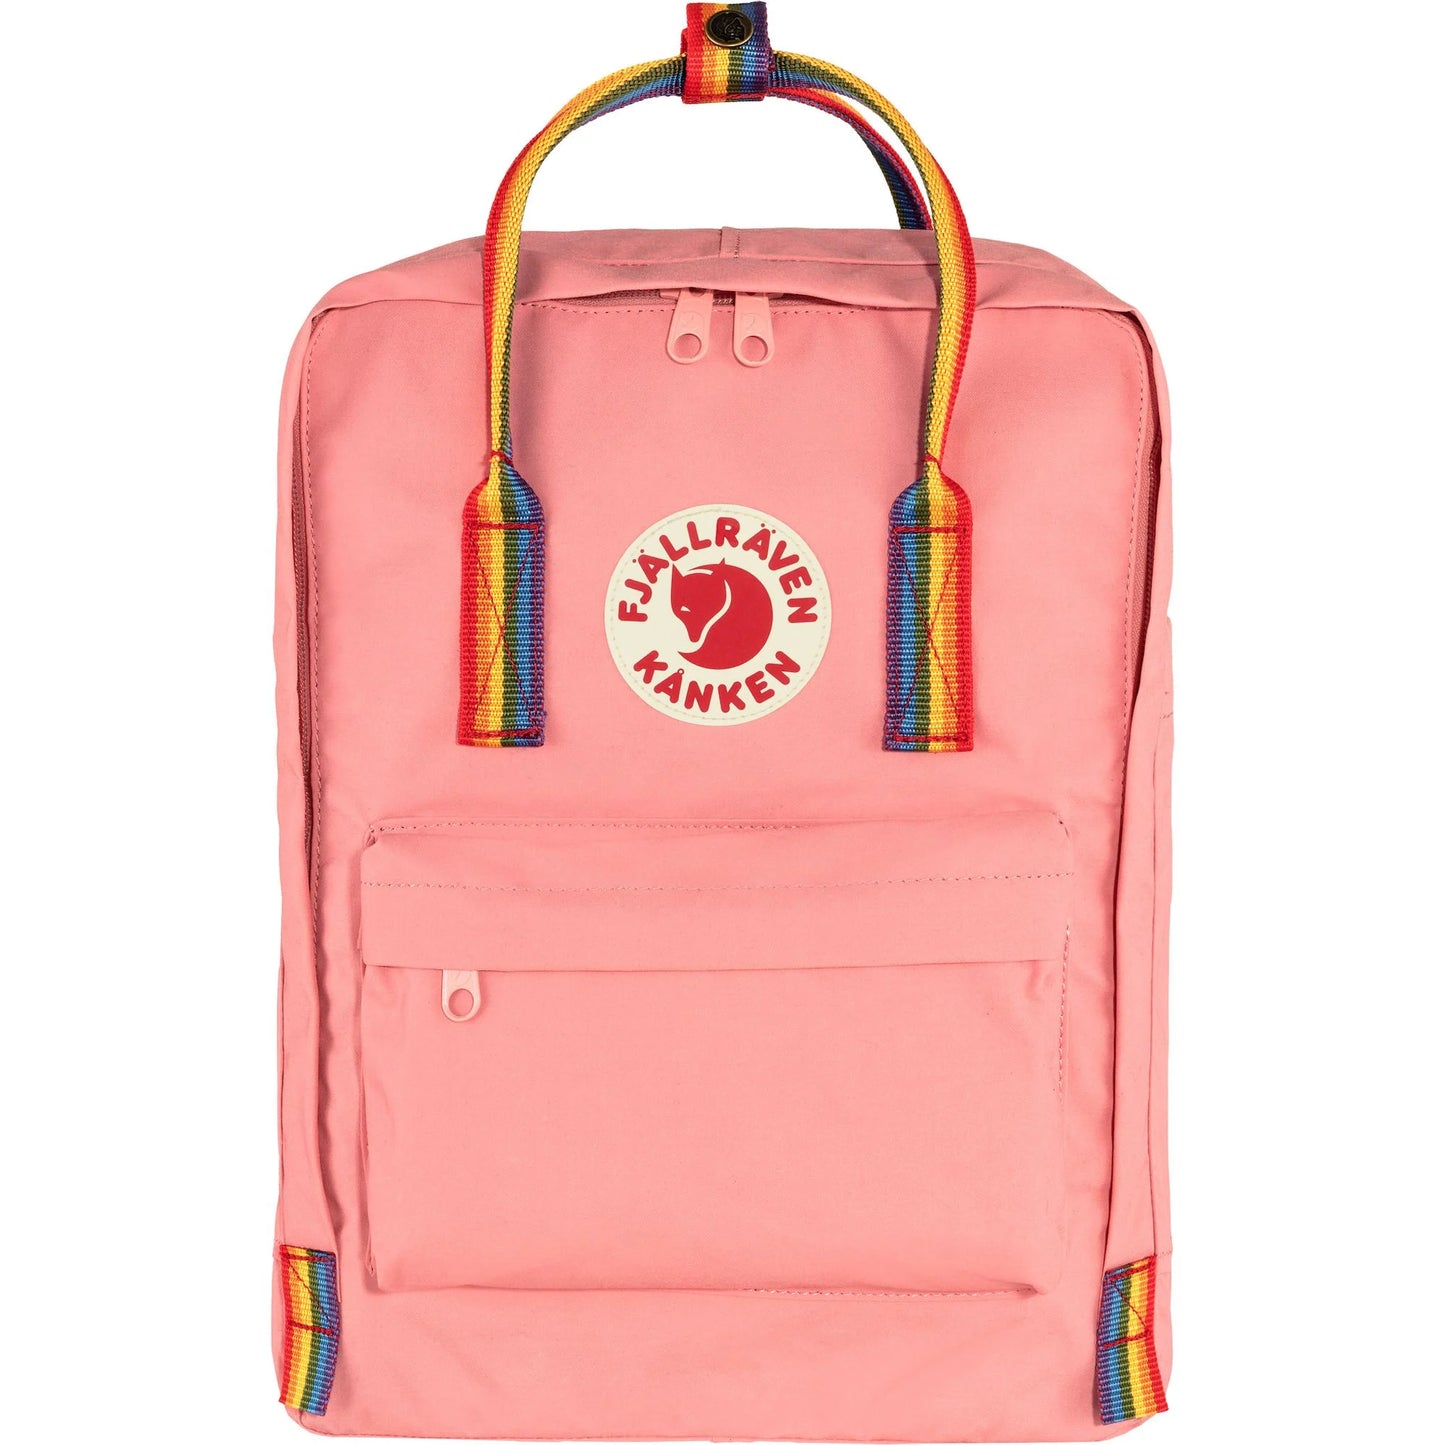 Kanken Rainbow Bag